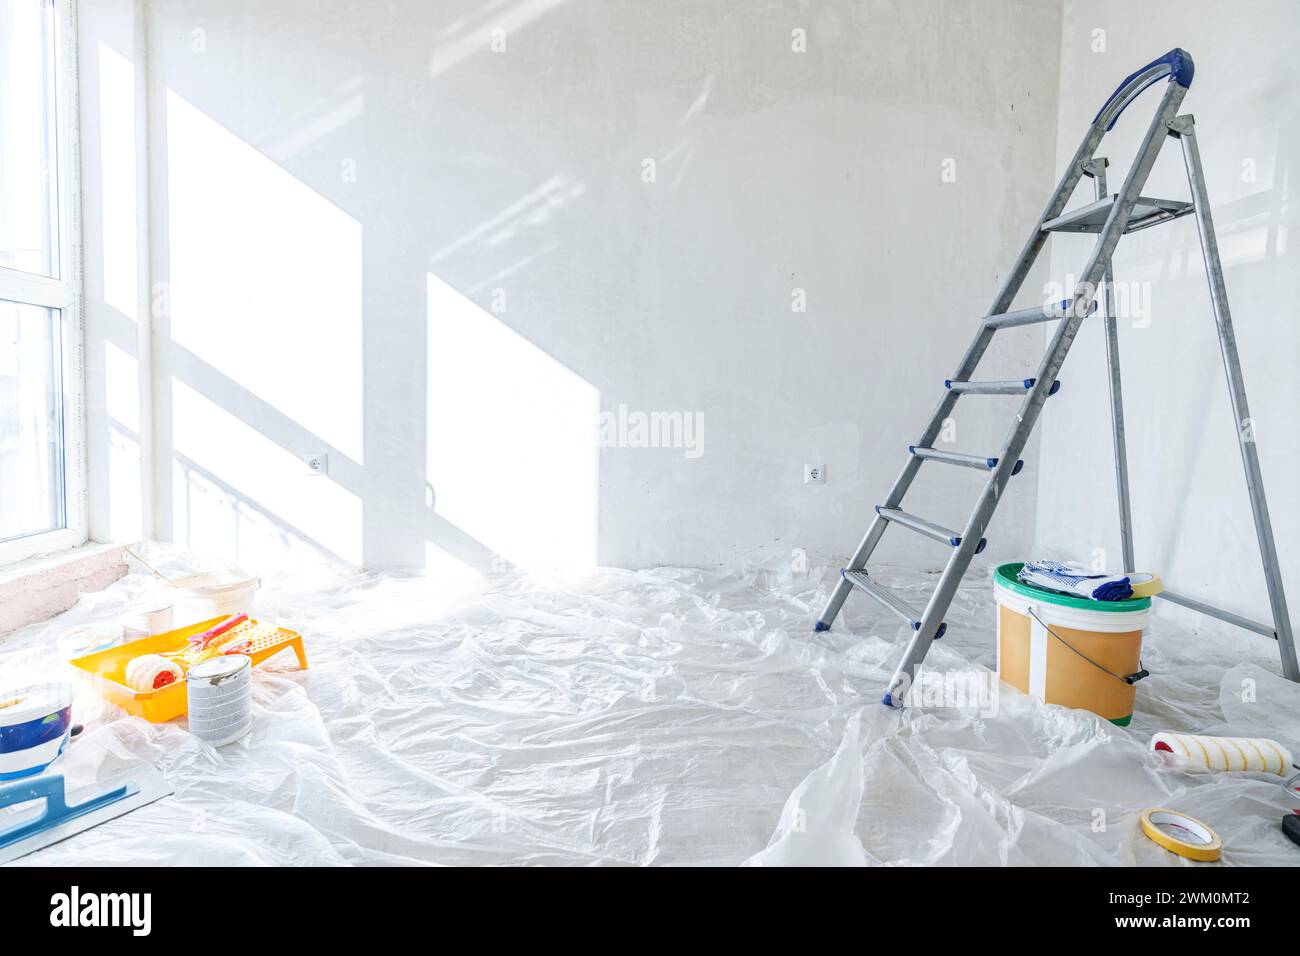 Lackiergeräte und Leiter auf dem mit Kunststoff bedeckten Boden zu Hause Stockfoto